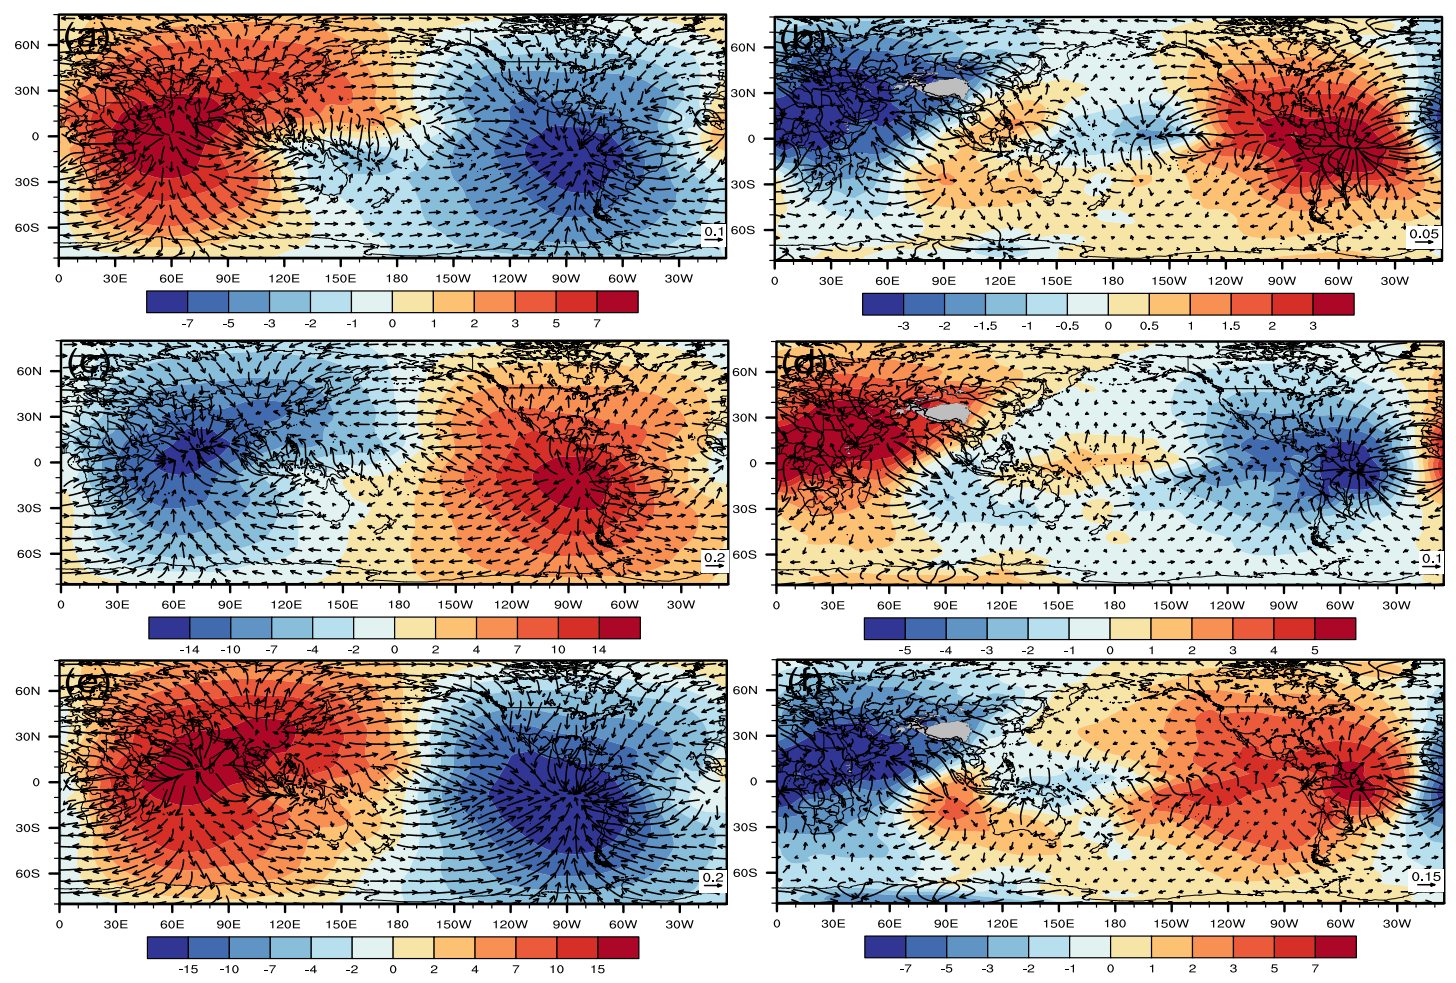 夏季亚洲风区-青藏高原热源年代际变化对北半球大气环流影响研究取得新进展